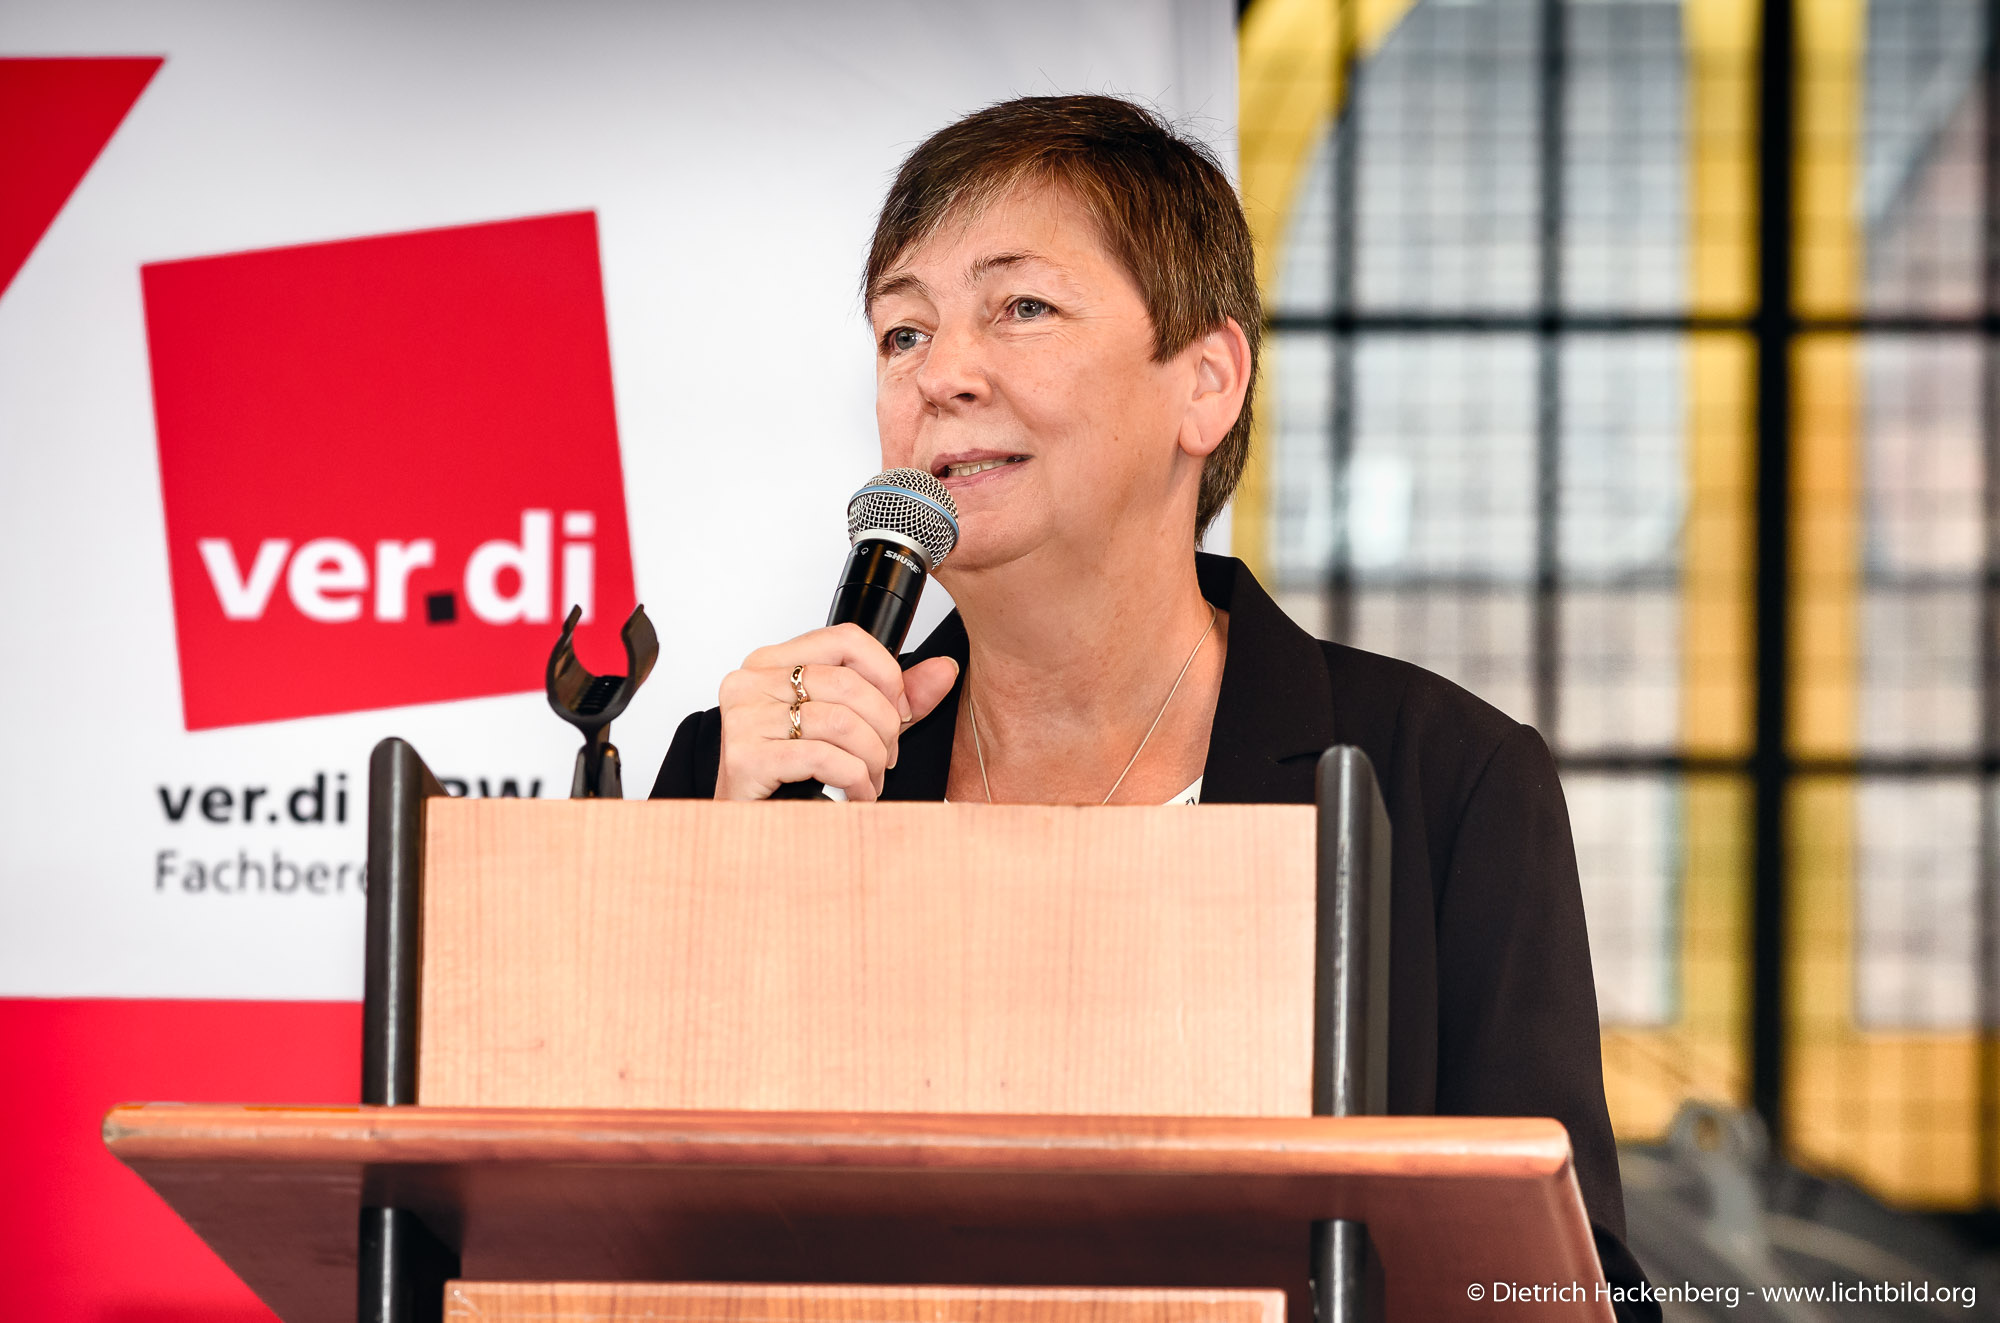 Gabi Schmidt. ver.di Handel NRW Streikkonferenz am 13.09.2019 in der Maschinenhalle der Zeche Zollern in Dortmund. Foto © Dietrich Hackenberg